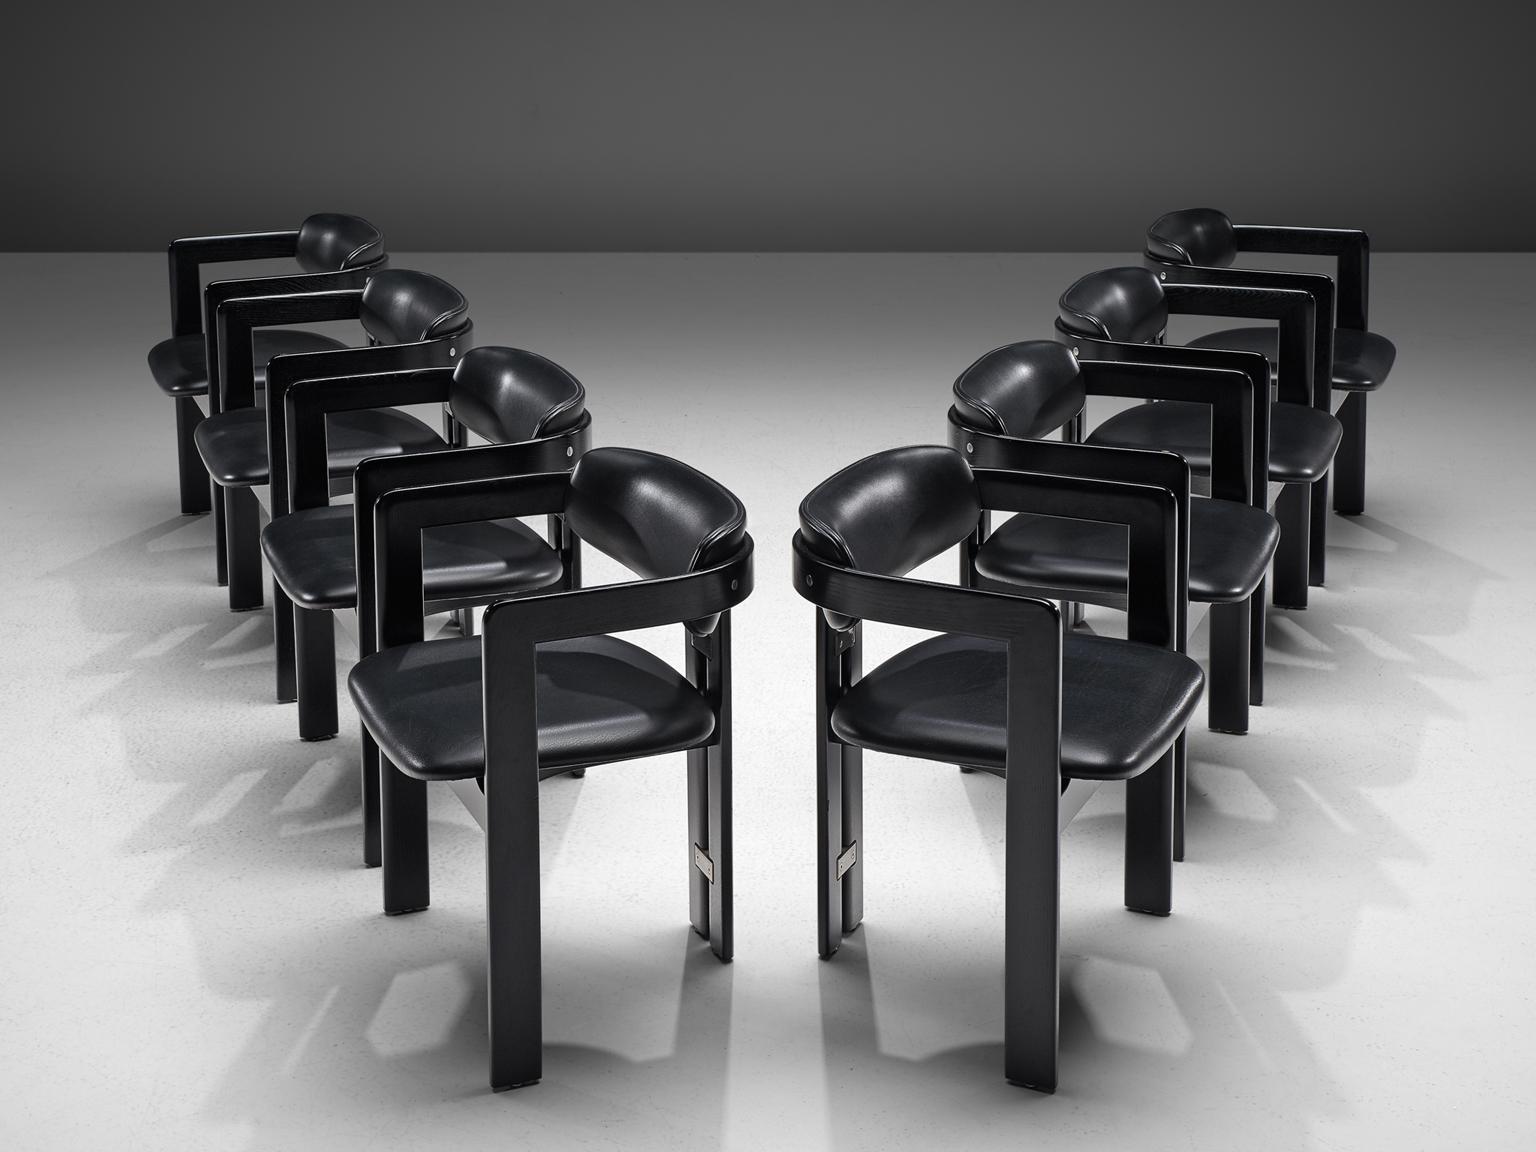 Augusto Savini pour Pozzi:: ensemble de 8 fauteuils 'Pamplona':: cuir noir:: bois plaqué:: métal:: Italie:: années 1960. 

Ensemble de huit fauteuils en bois laqué noir et cuir noir. Les chaises ont un design unique et caractéristique:: simpliste